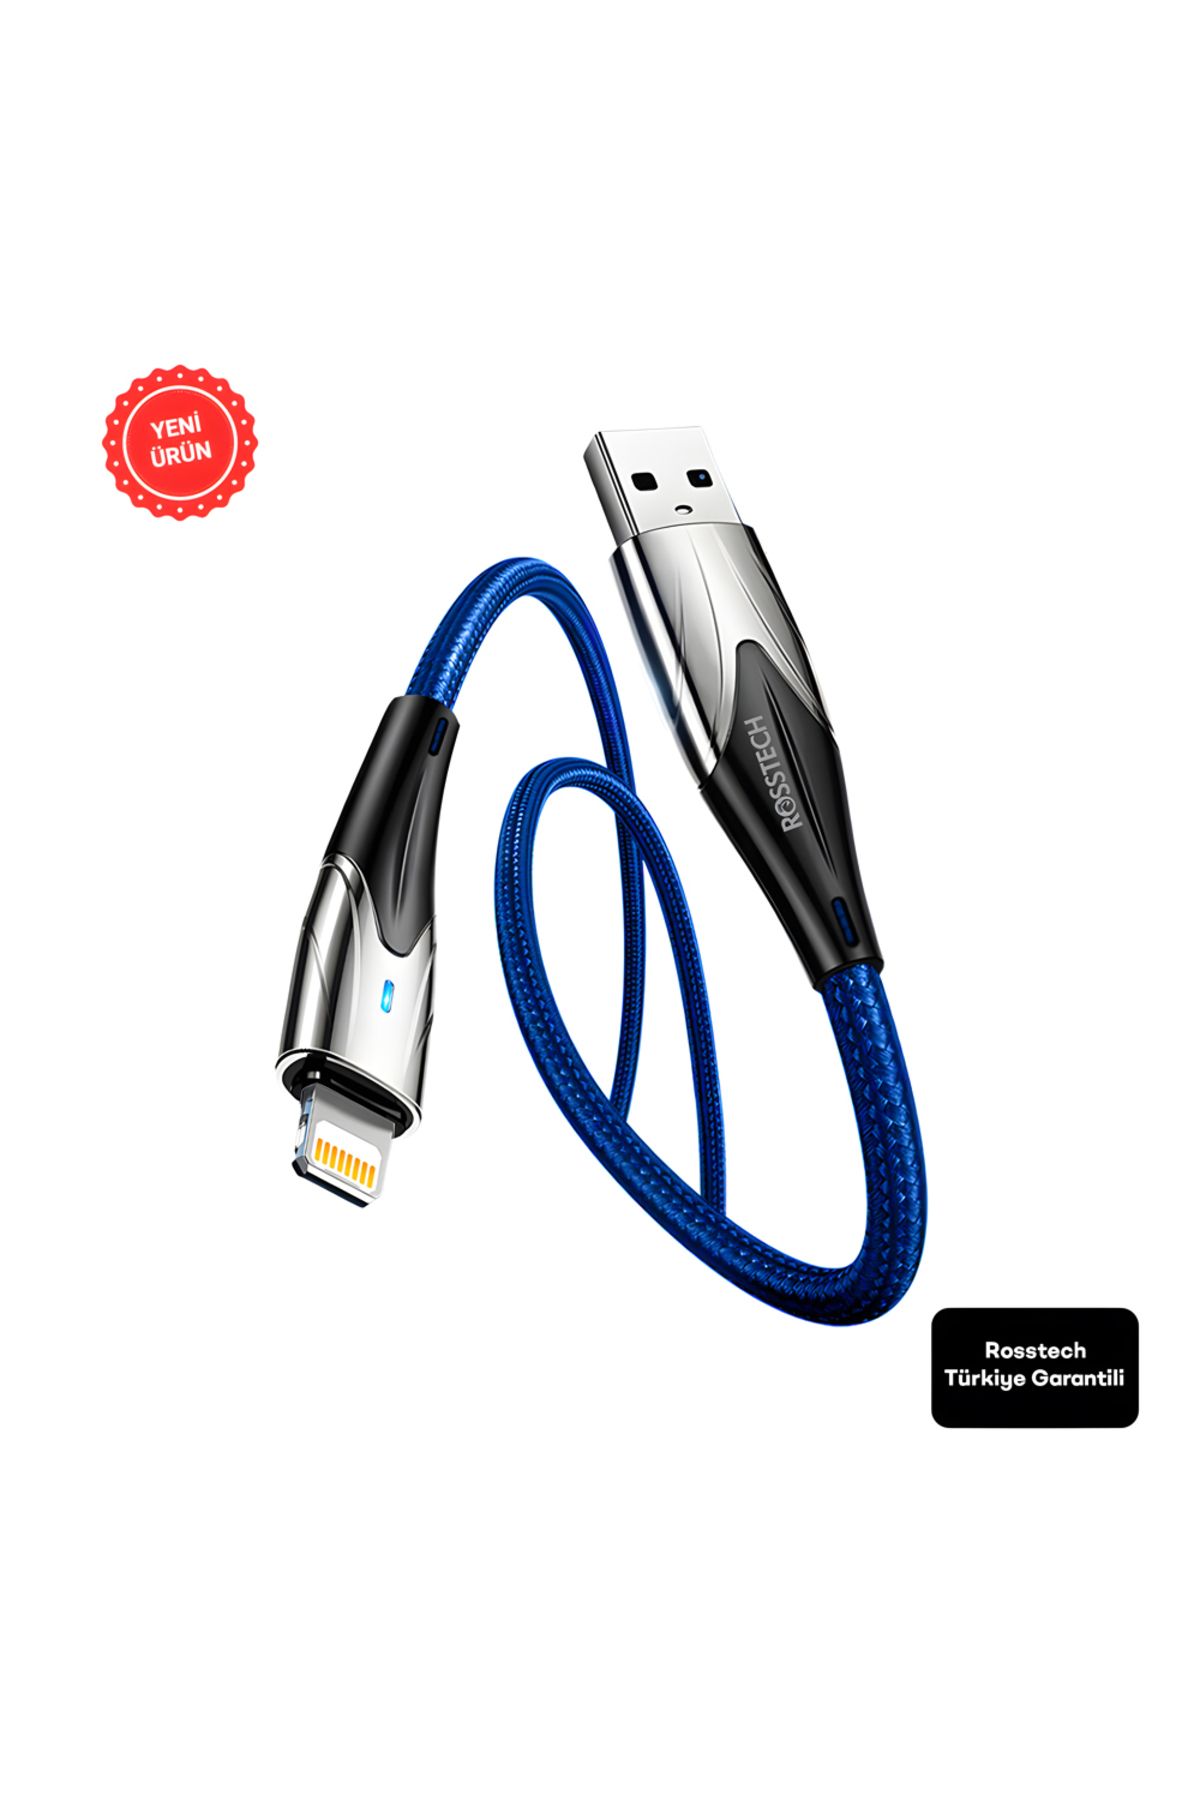 ROSSTECH Lightning To USB Led Hızlı Şarj Kablosu İphone Uyumlu 1m (Rosstech Türkiye Garantili)